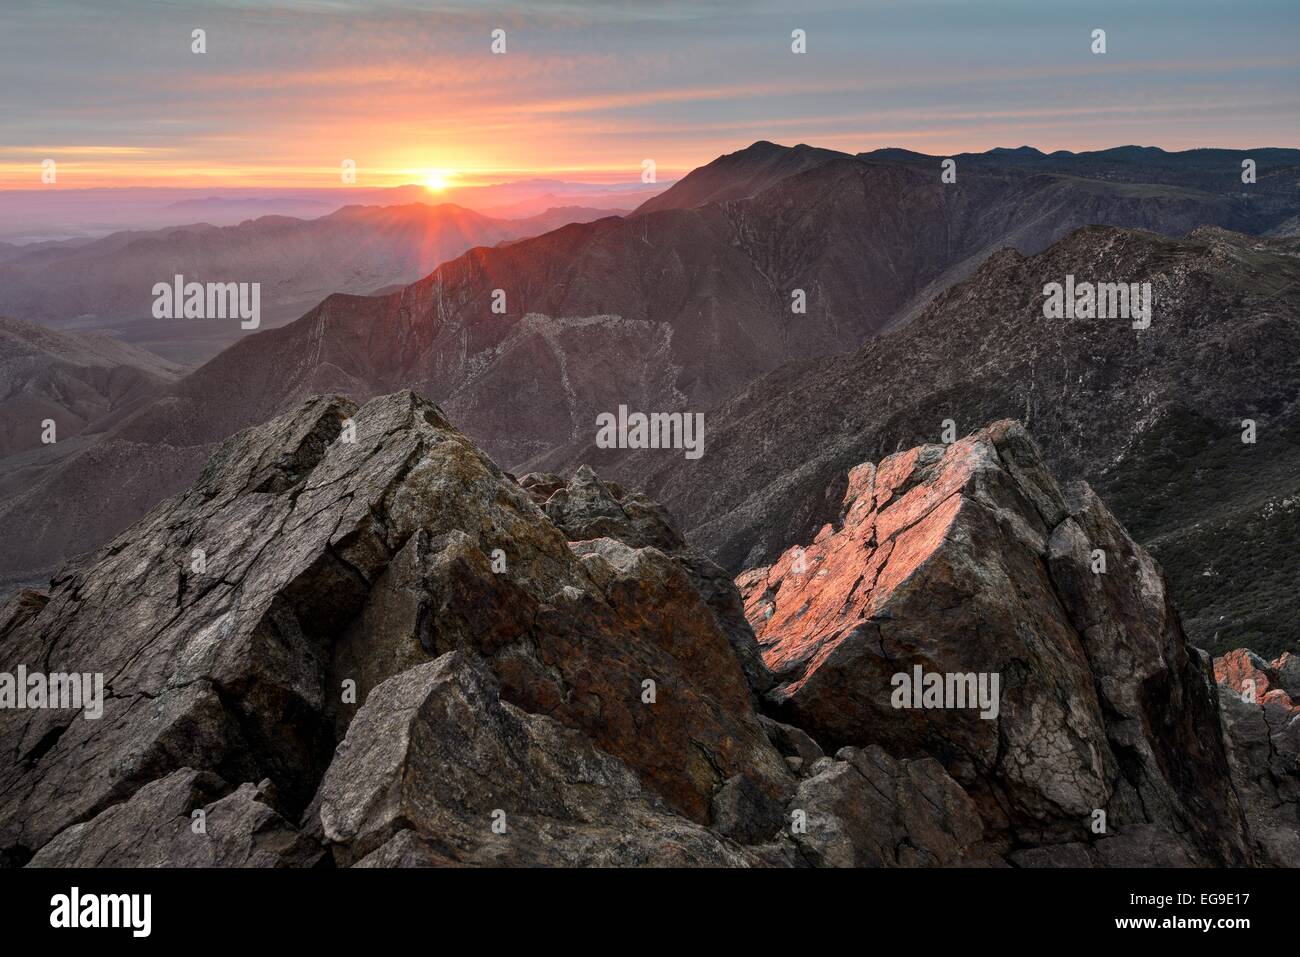 USA, California, Cleveland National Forest, Garnet Peak Summit at sunrise Stock Photo